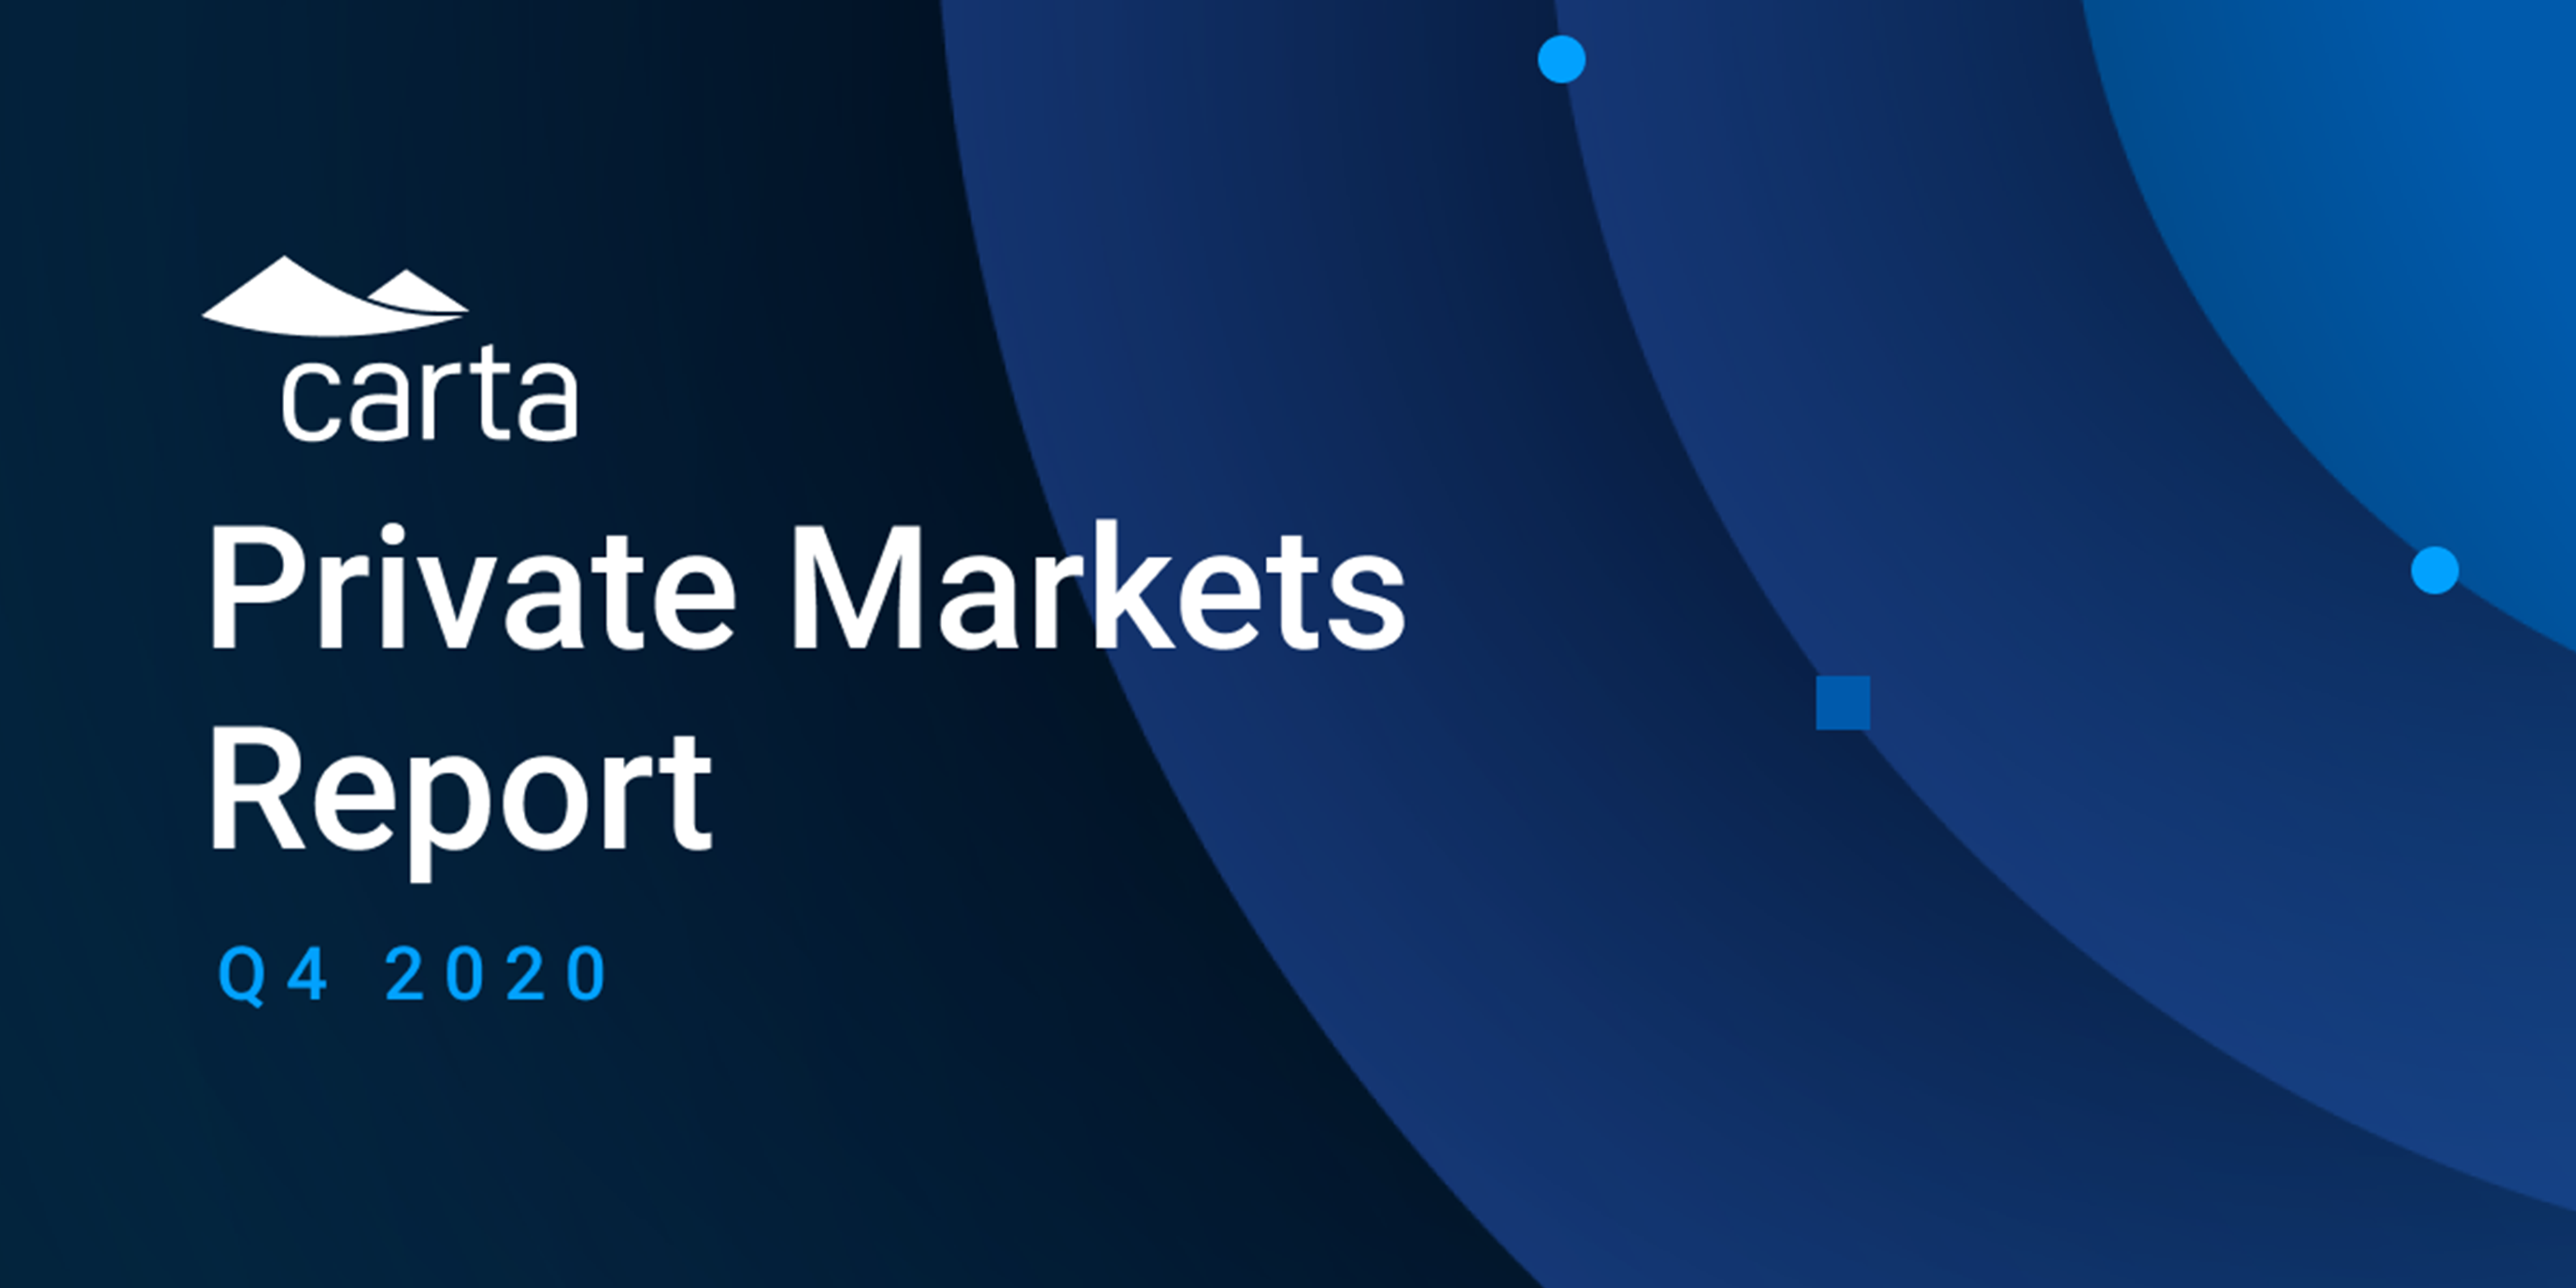 Carta's Private Markets Report - Q4 2020